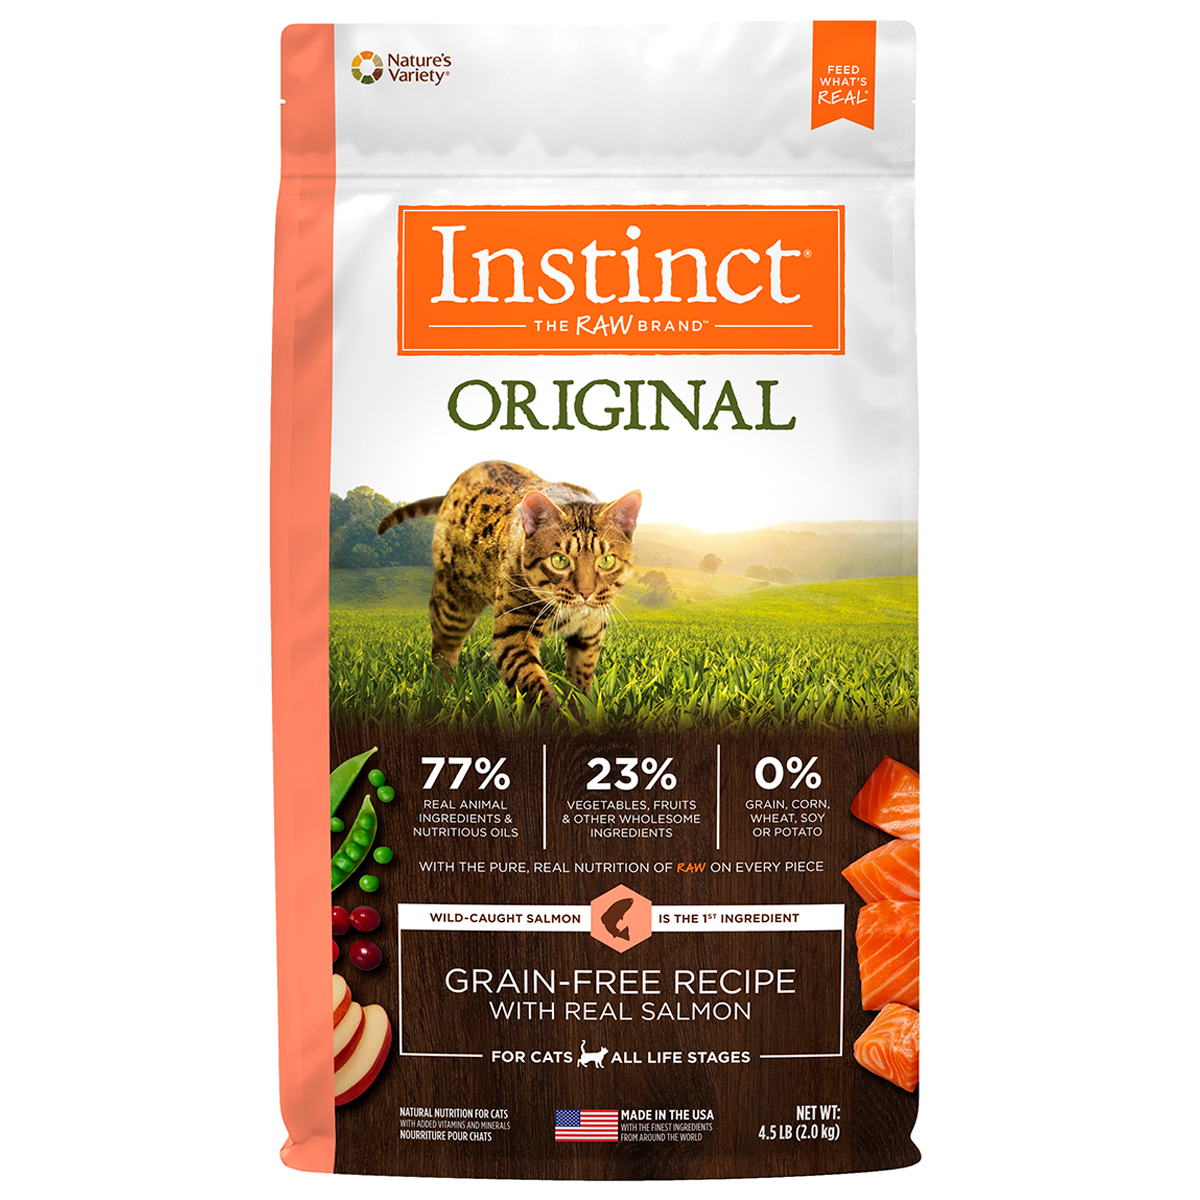 Instinct Original Alimento Natural Libre de Granos para Gato Todas las Edades Receta Salmón, 2 kg